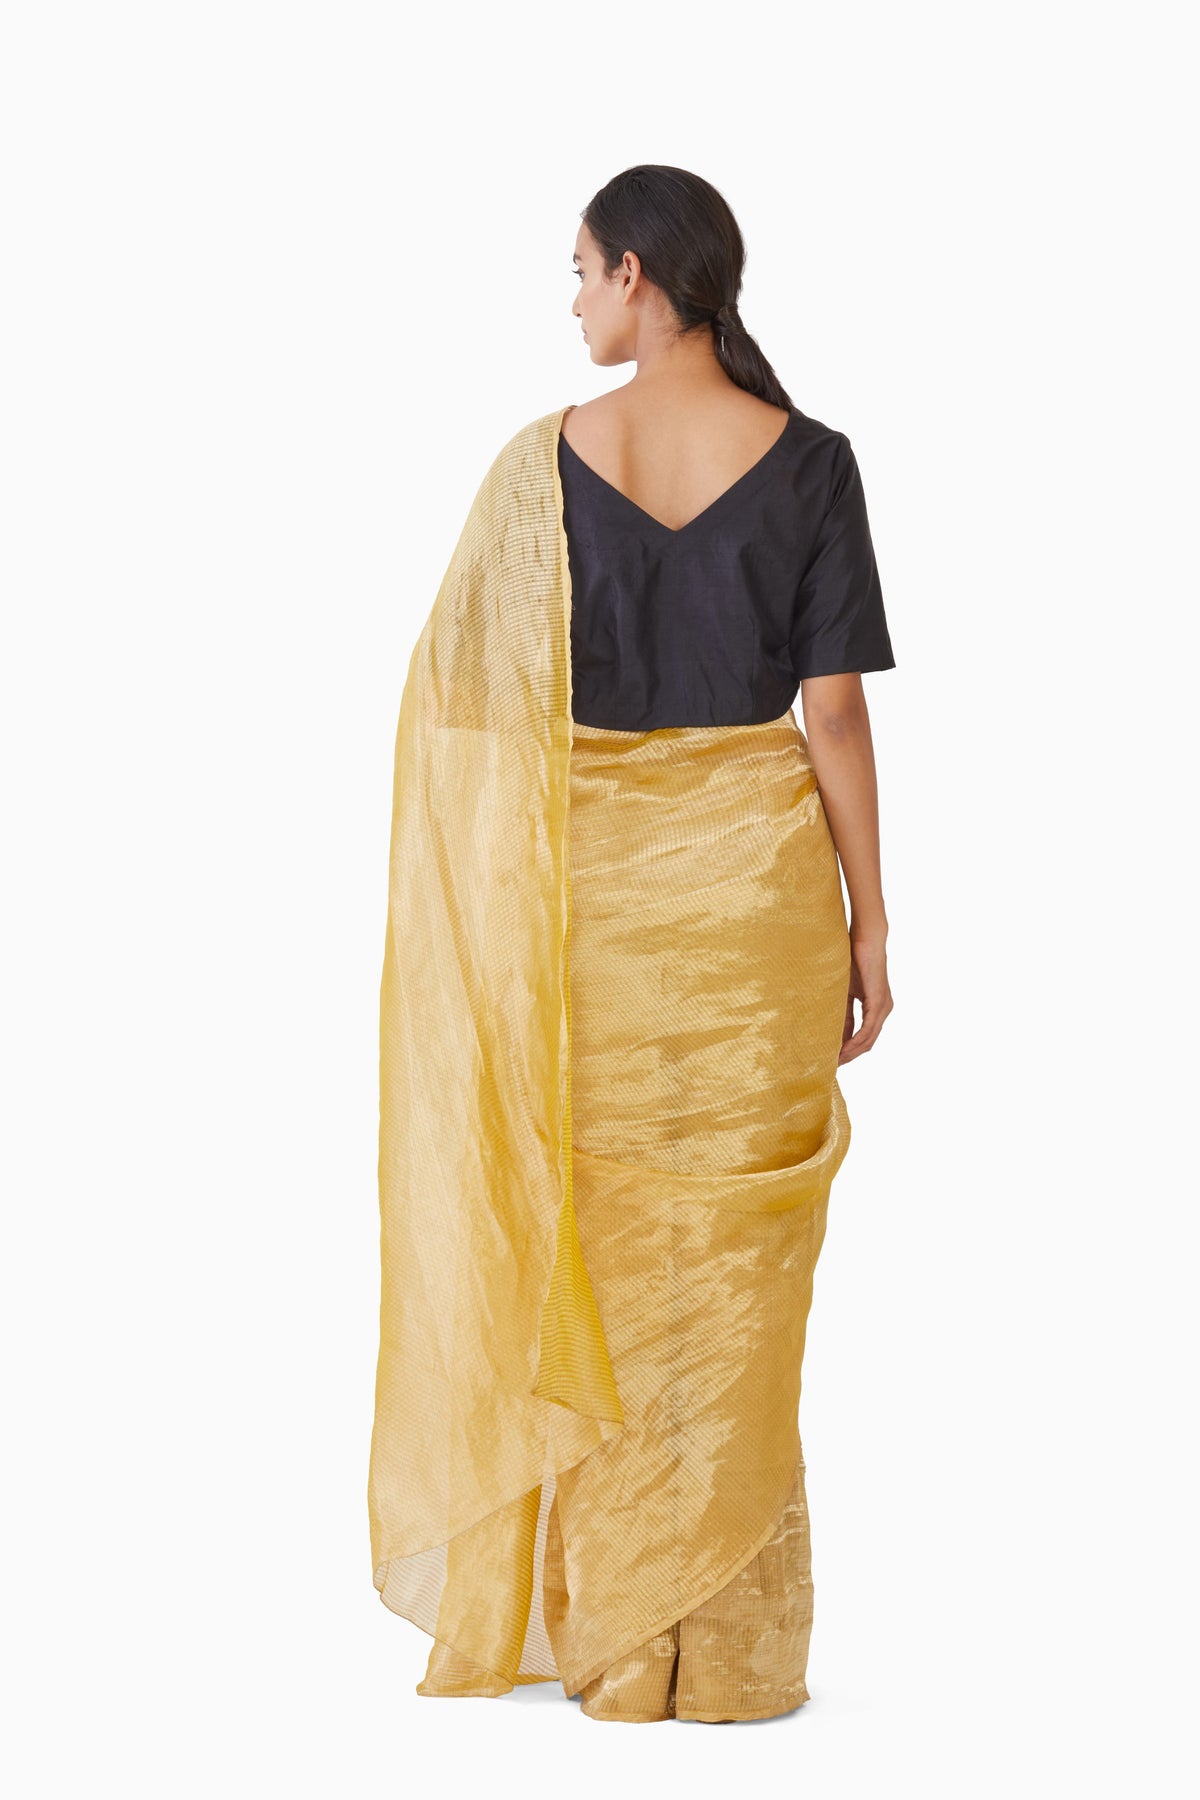 Textured yellow metallic saree